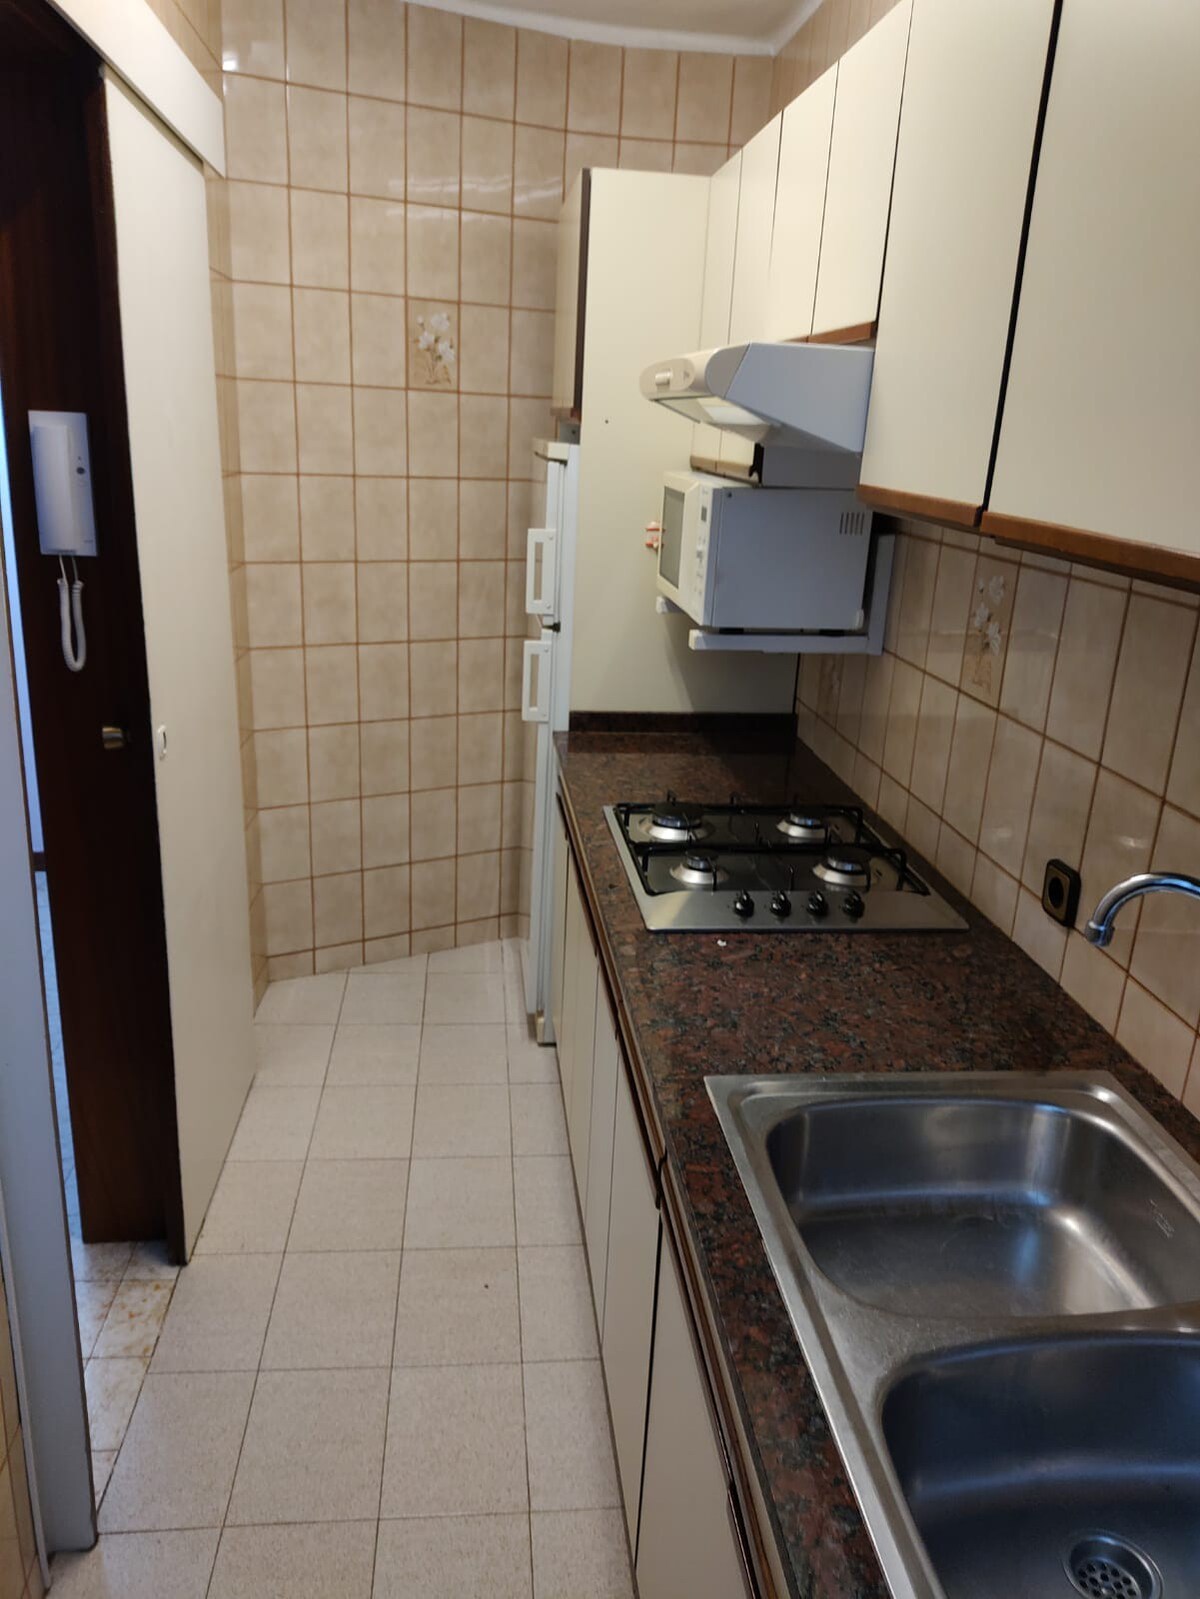 巴塞罗那装修公寓中的单人间房源